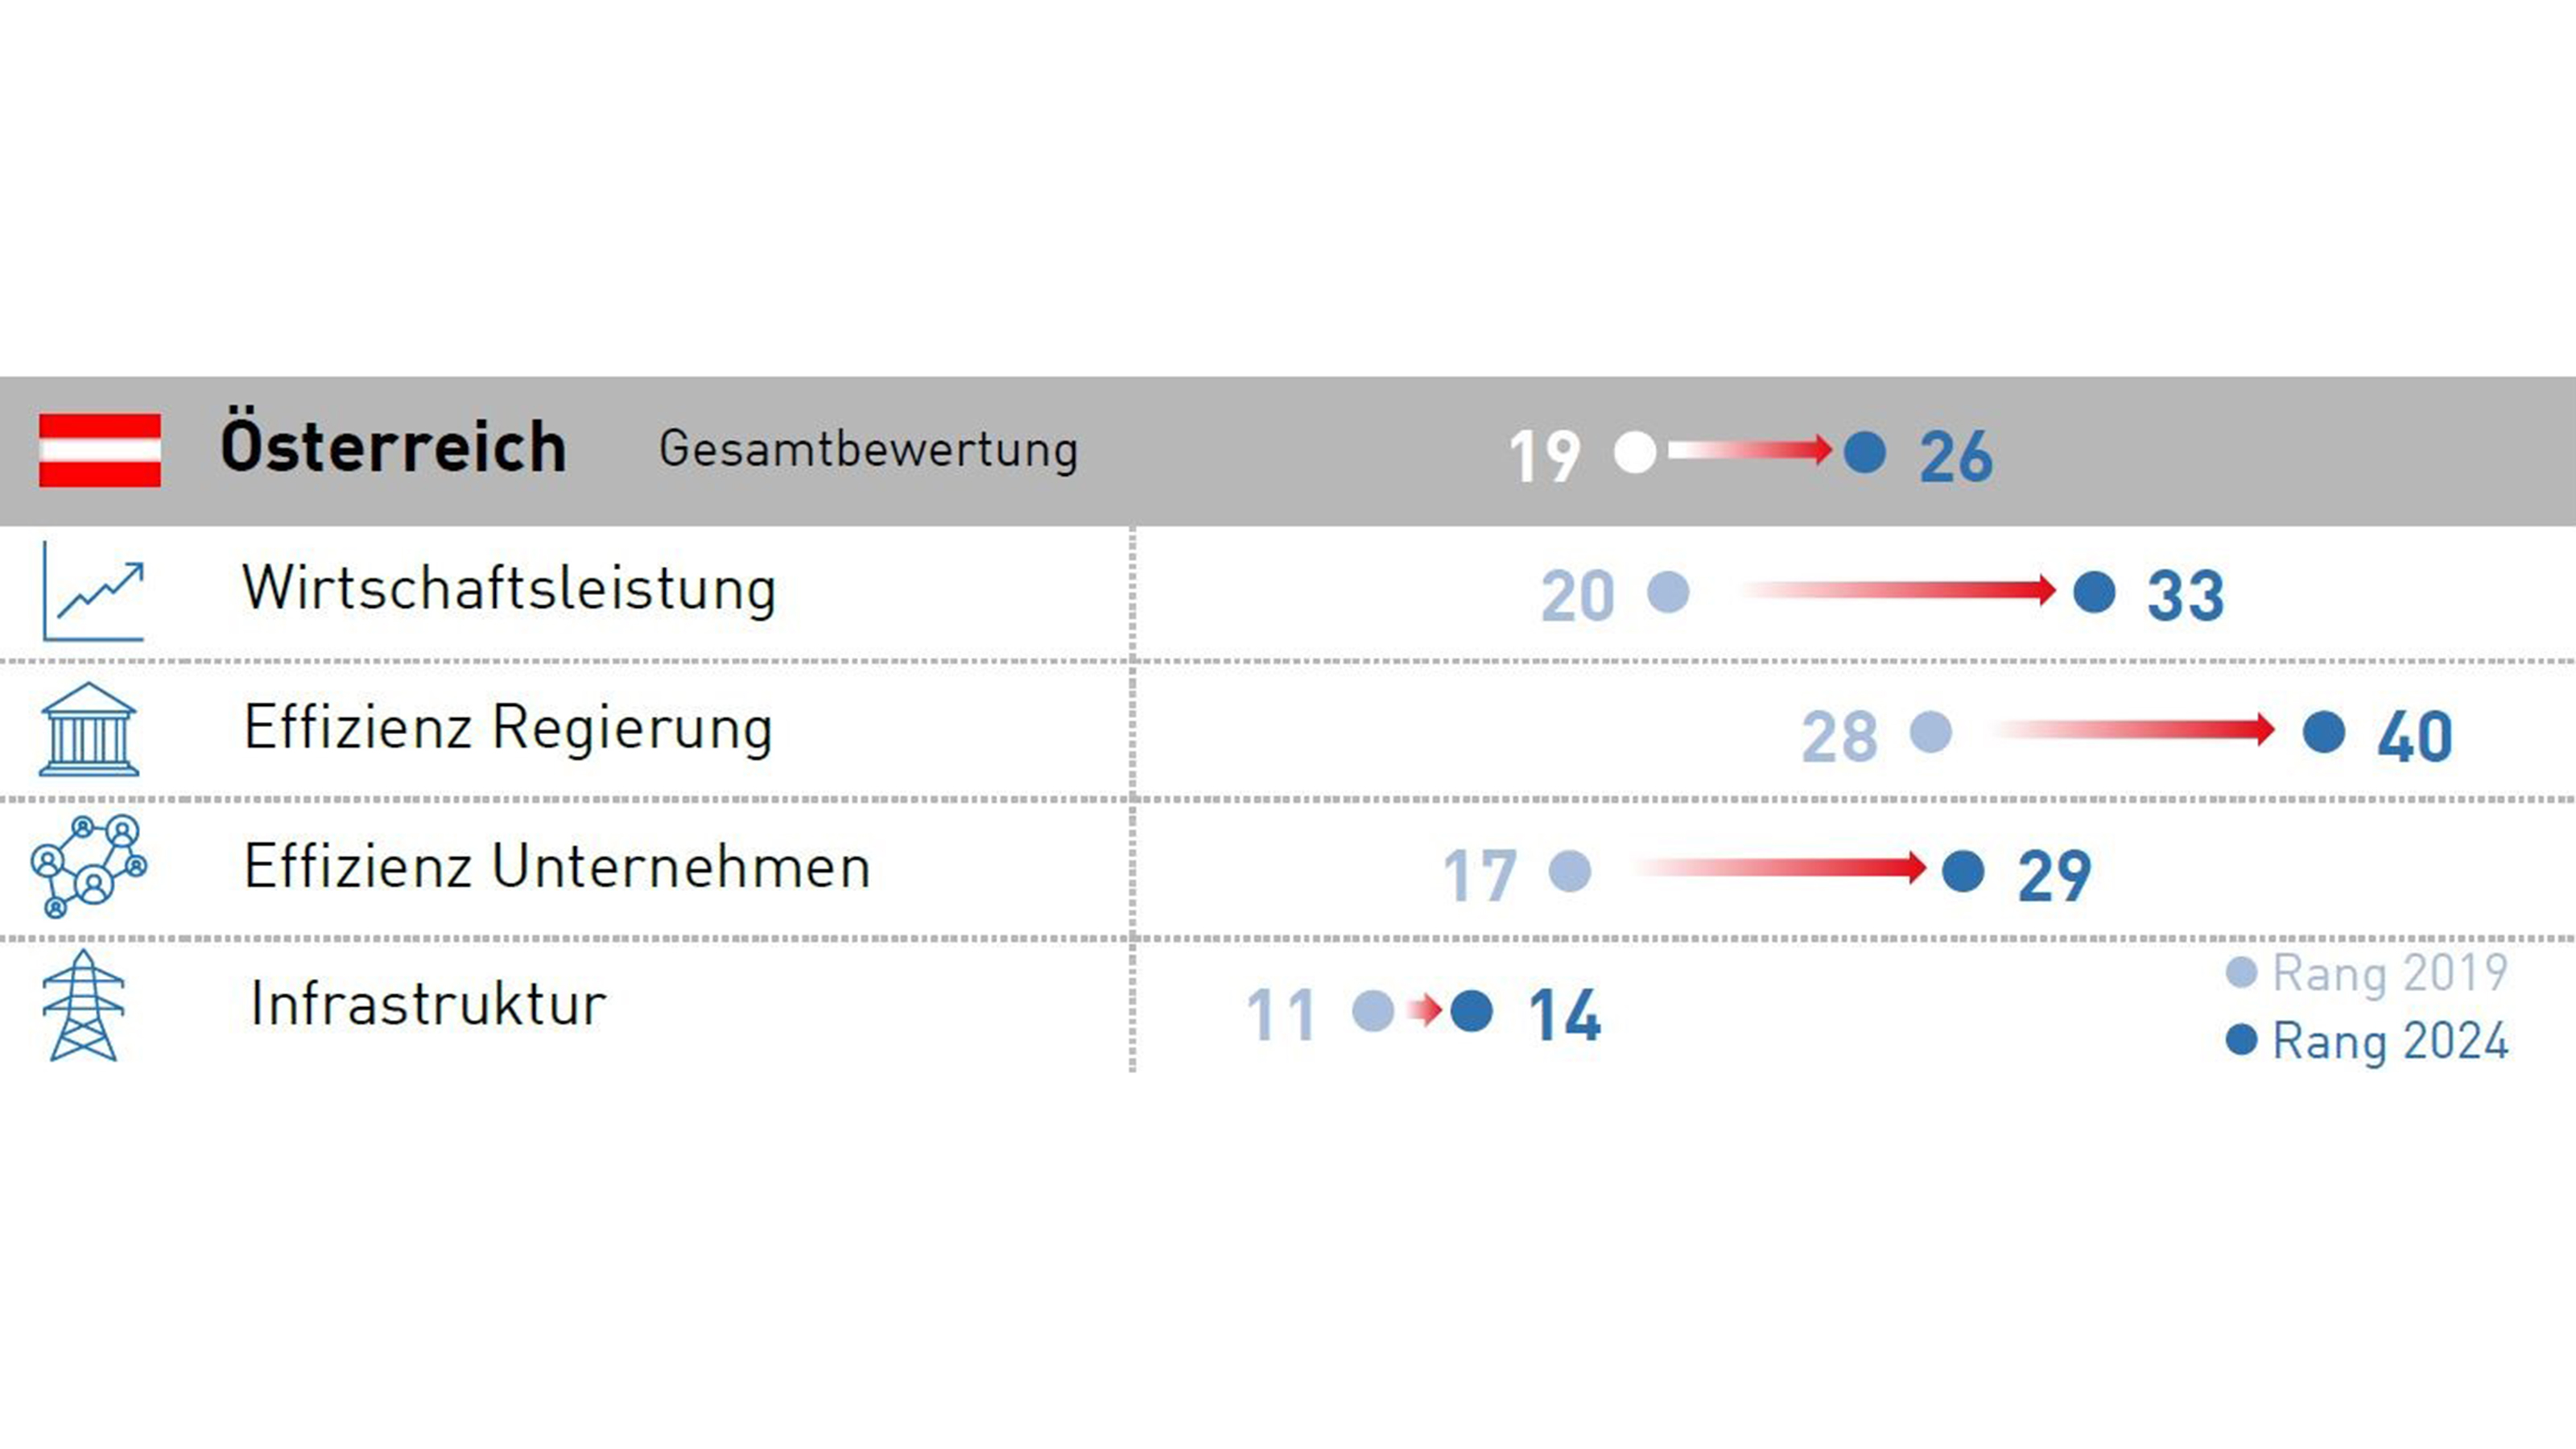 Tabelle zur Gesamtbewertung Österreichs nach Wirtschaftsleistung, Effizienz Regierung, Effizienz Unternehmen und Infrastruktur